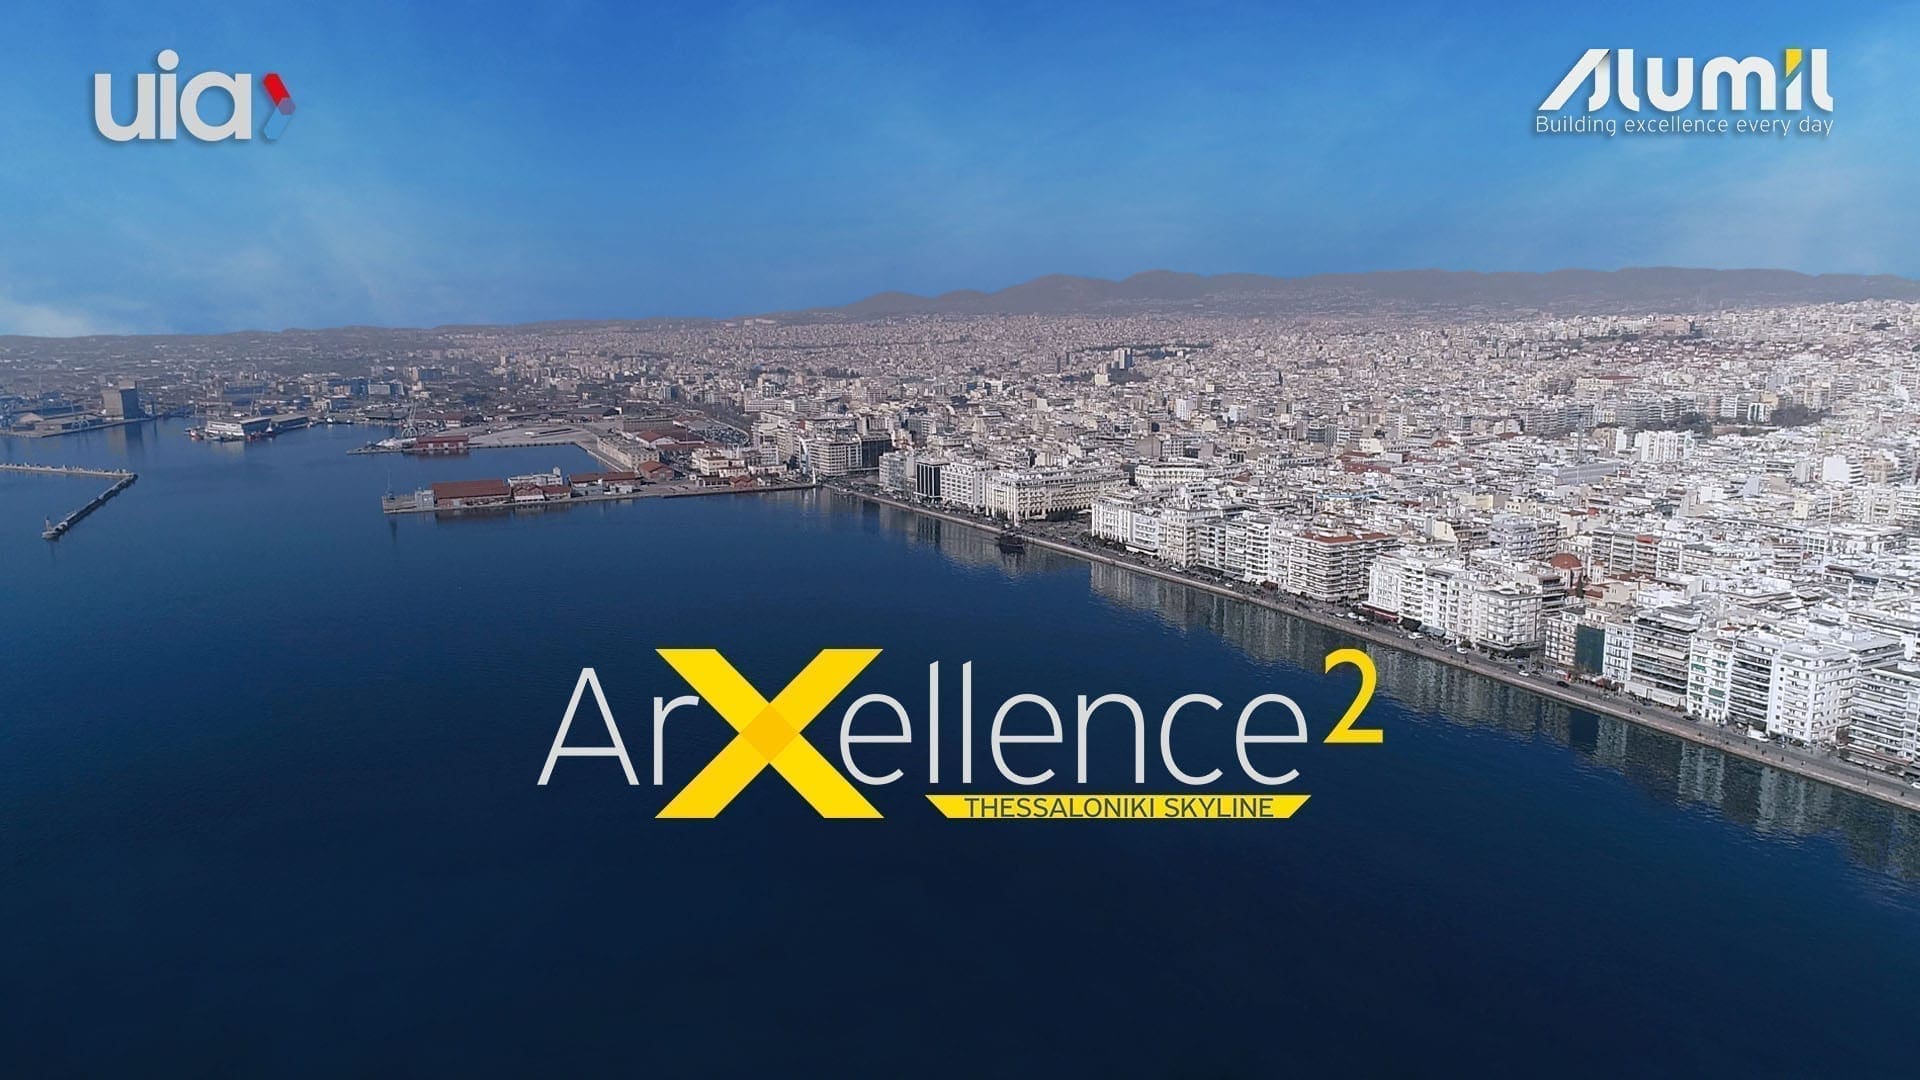 Arxellence 2 MAIN PHOTO 1 - ALUMIL organizează ArXellence 2, competiție deschisă arhitecților pentru noul Central Business District din Salonic